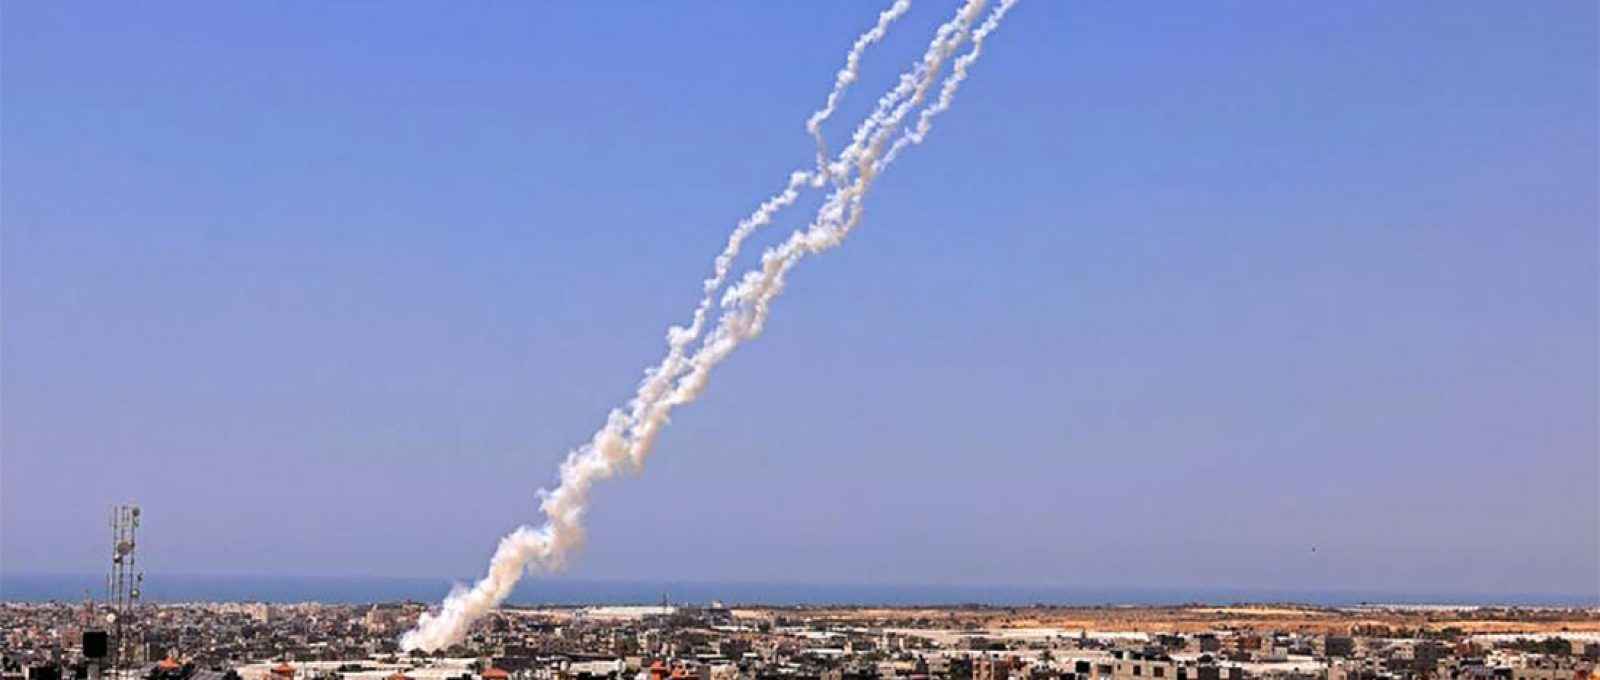 Foguetes são lançados em direção a Israel de Rafah, no sul da Faixa de Gaza, controlada pelo Hamas, em 12 de maio de 2021 (Foto: Said Khatib/AFP).